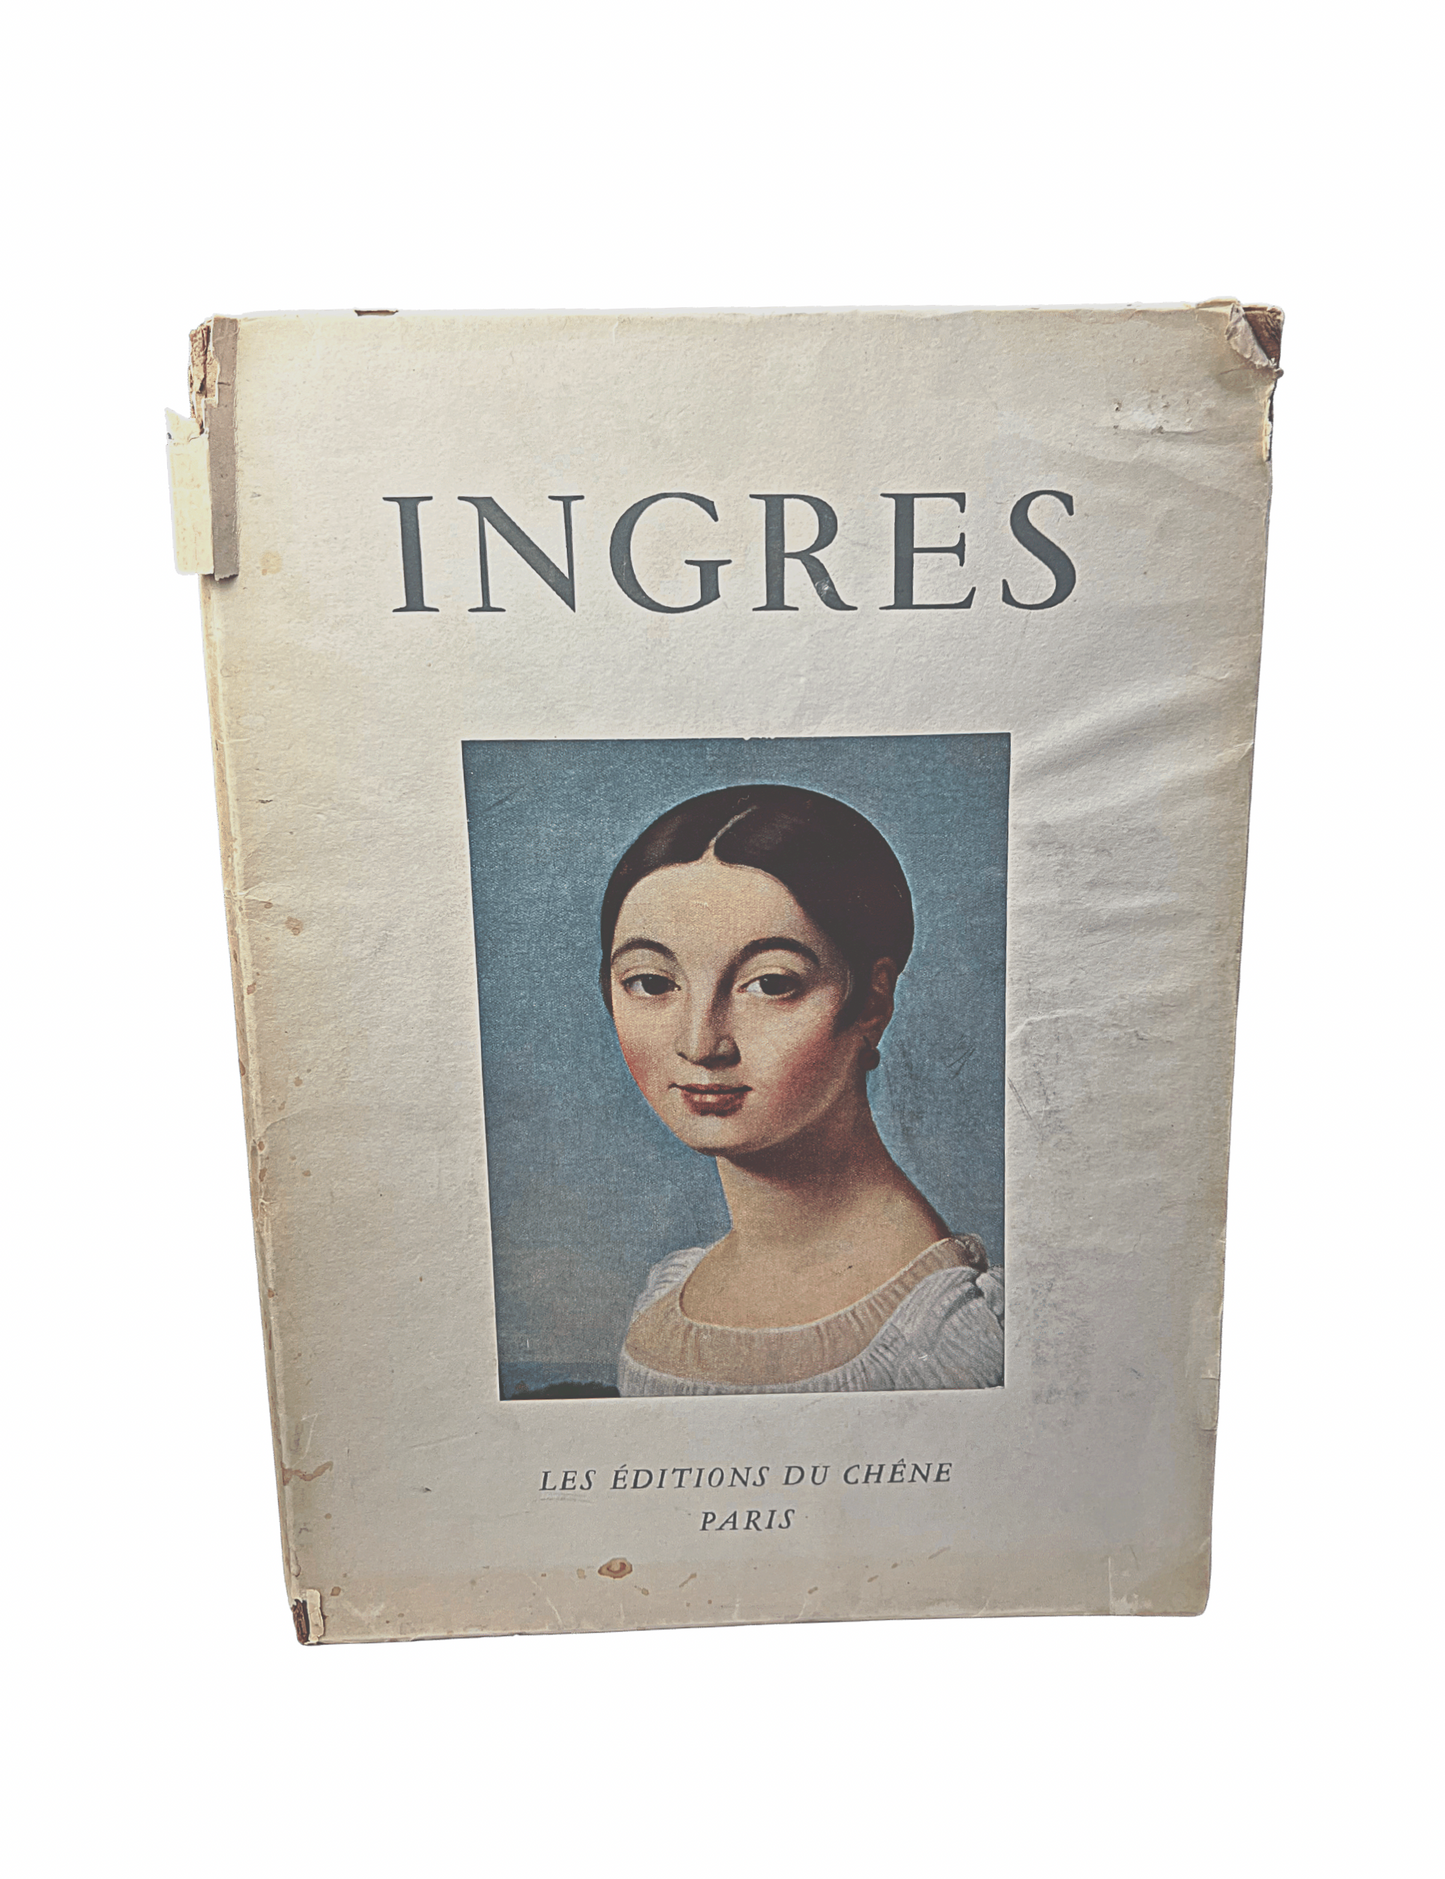 Vintage 1951 Ingres Par Frank Elgar French Art Book